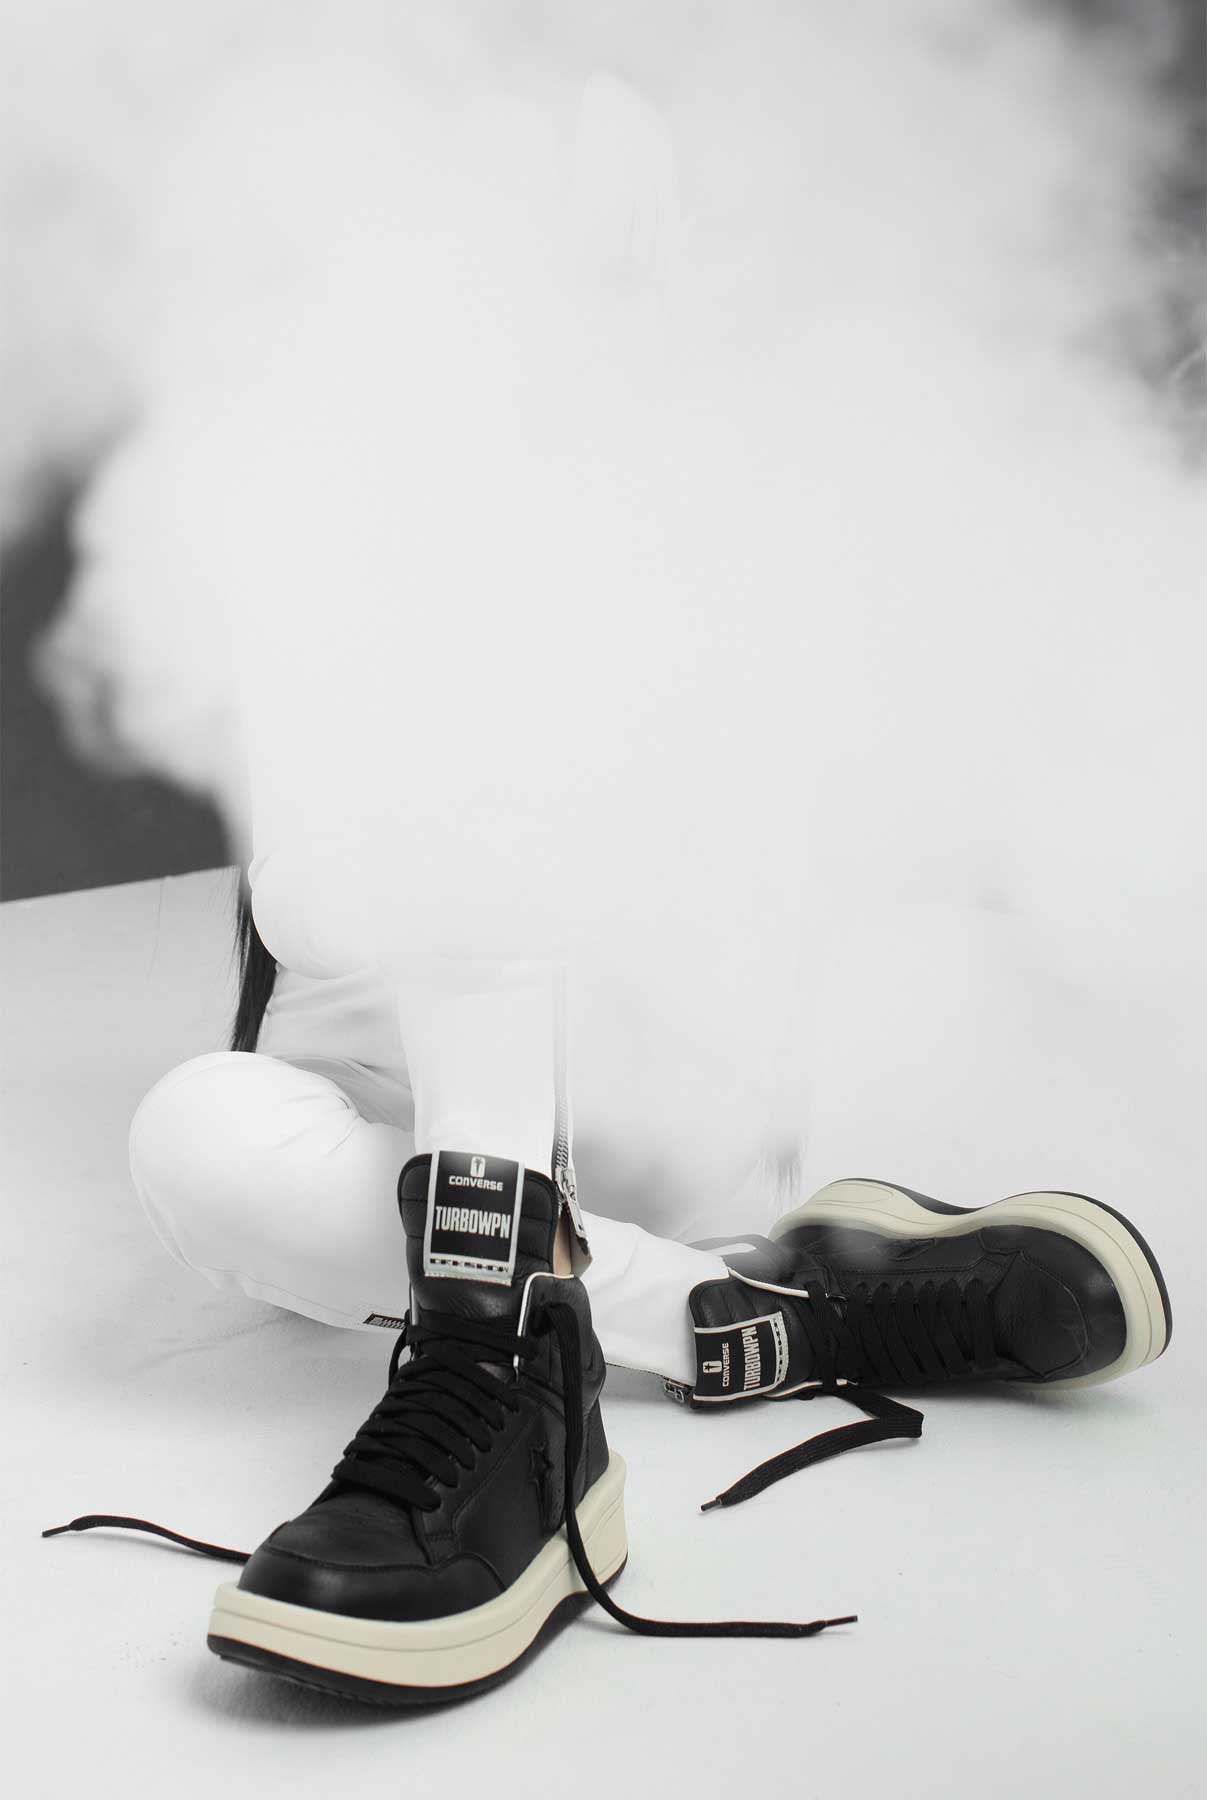 Las nuevas zapatillas Converse de Rick Owens: Turbowpn